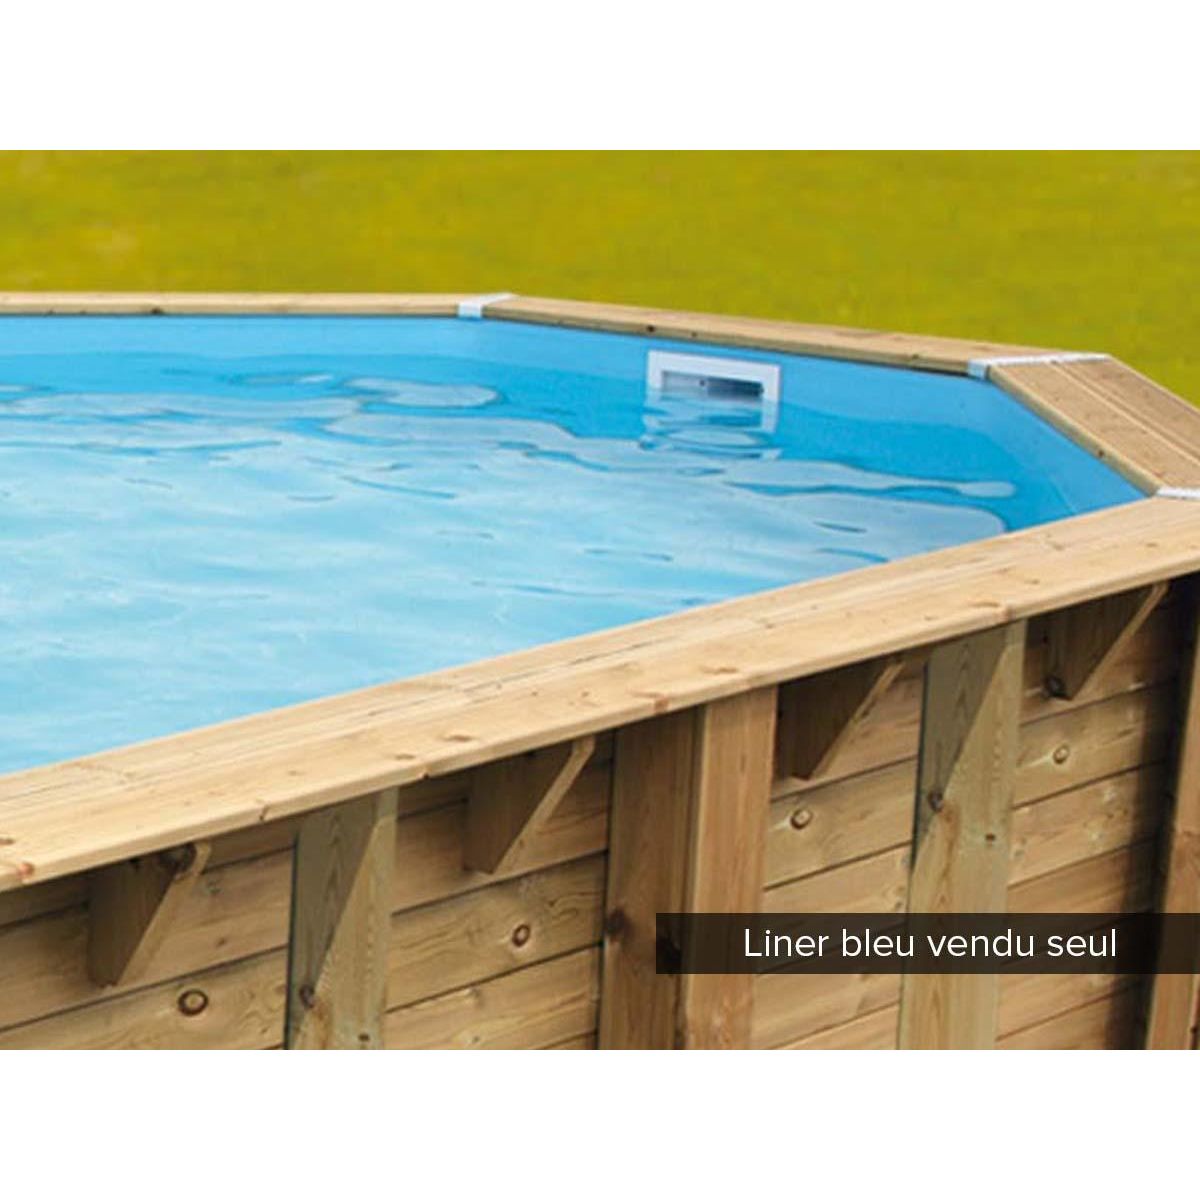 Ubbink Liner seul Bleu pour piscine bois Azura 3,55 x 5,50 x 1,20 m - Ubbink